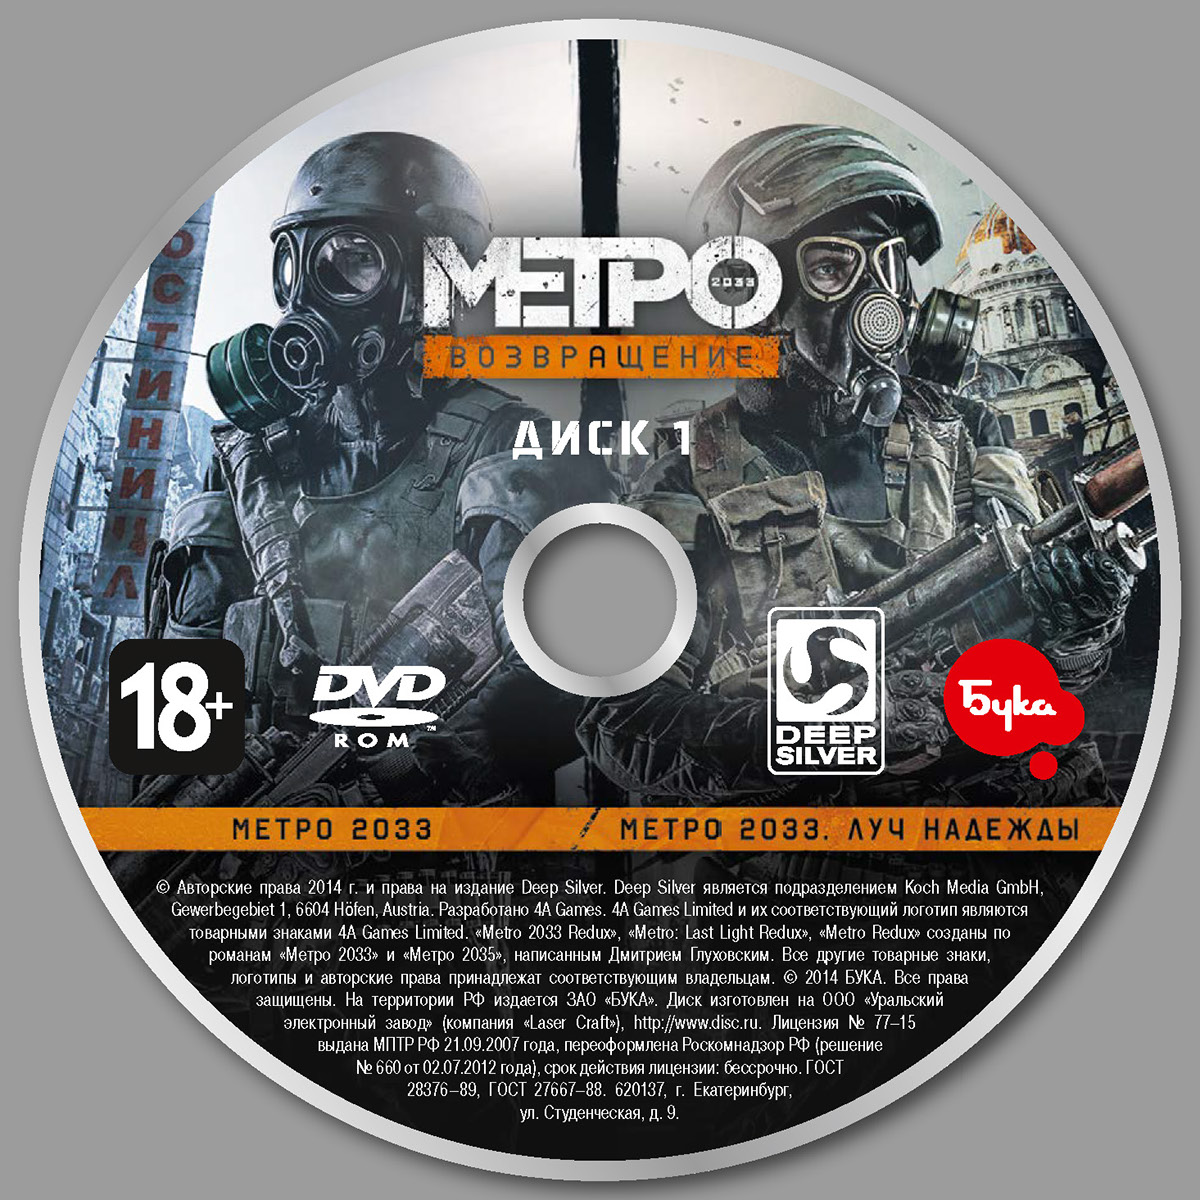 Метро игра плейстейшен. Metro 2033 Redux обложка ps4. Metro 2033 на пс3. Xbox 360 диск Metro: last Light. Диск Xbox 360 Metro 2033.